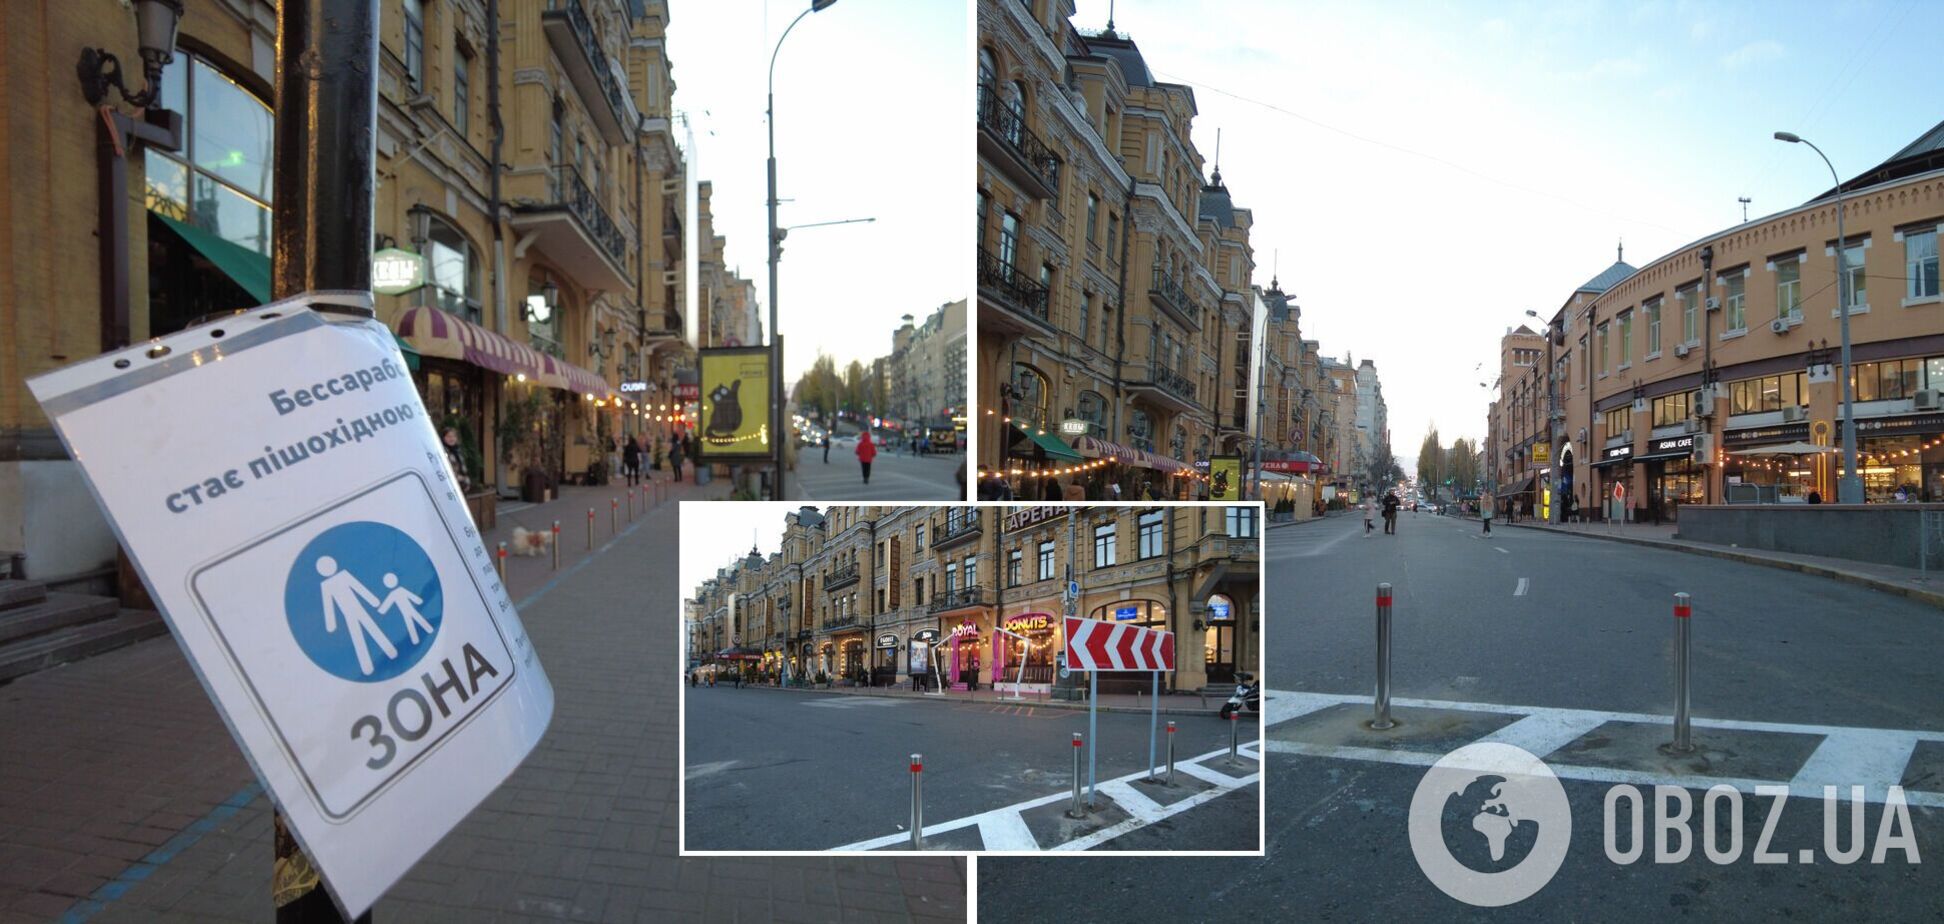 В Киеве сделали пешеходной одну из самых запаркованных улиц: фото и видео Бессарабского проезда